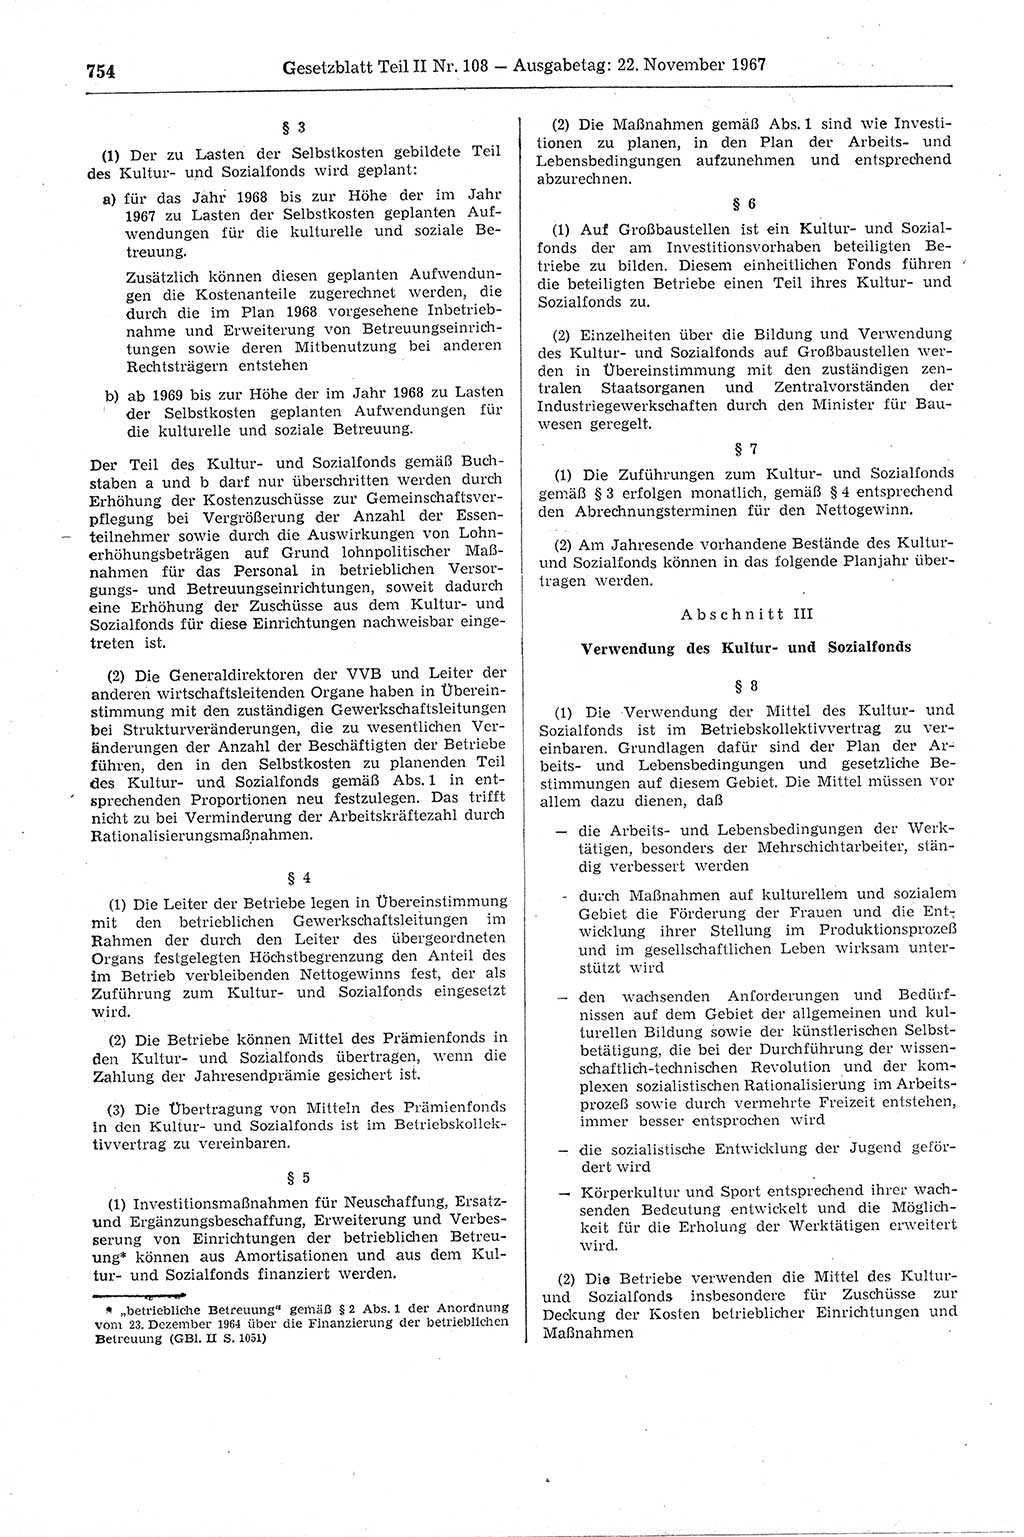 Gesetzblatt (GBl.) der Deutschen Demokratischen Republik (DDR) Teil ⅠⅠ 1967, Seite 754 (GBl. DDR ⅠⅠ 1967, S. 754)